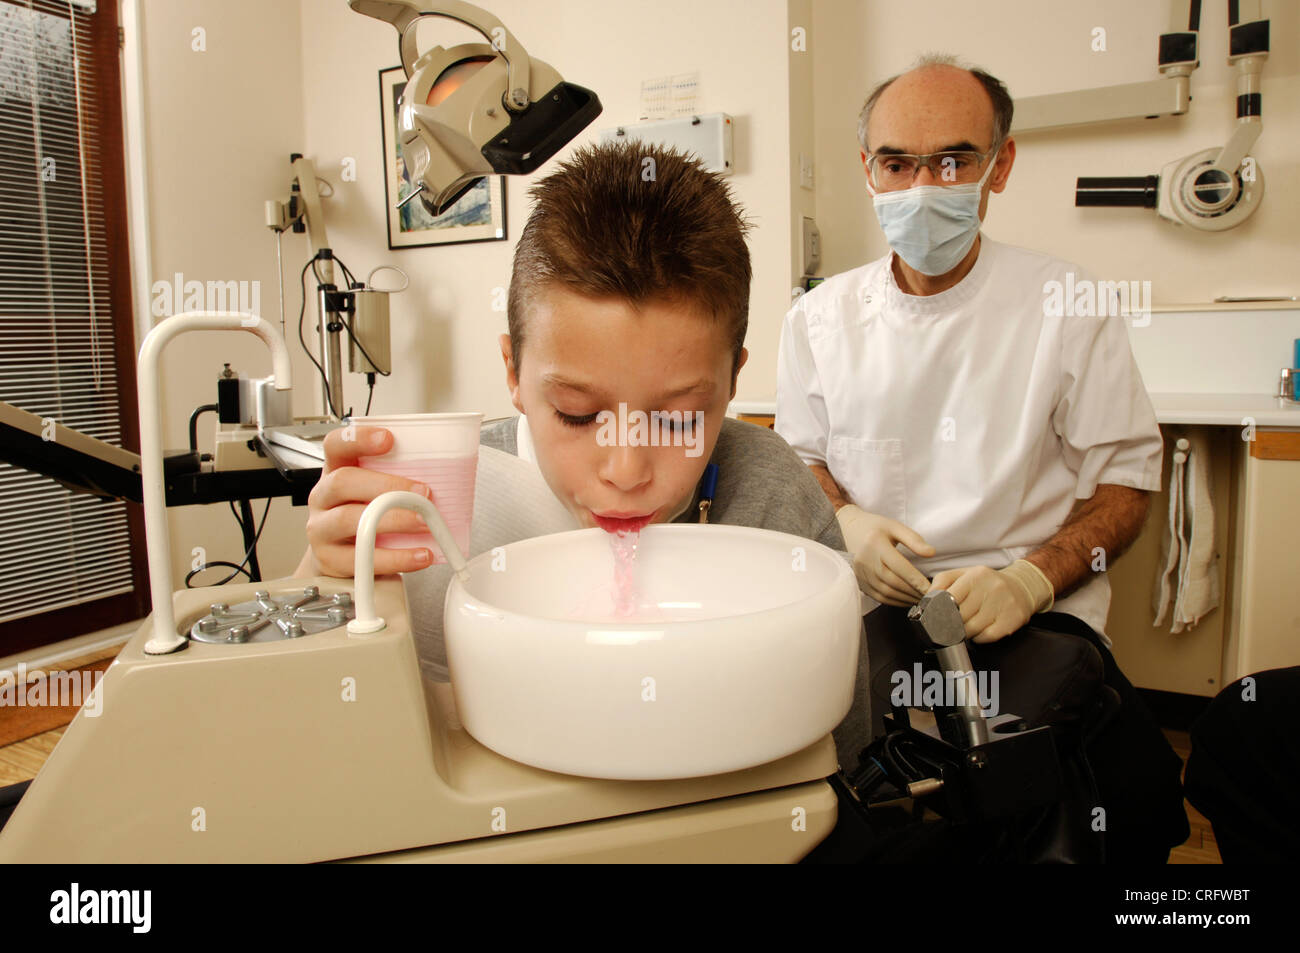 Un muchacho se enjuaga la boca con una solución anti-microbiana antes de someterse a tratamiento. Foto de stock